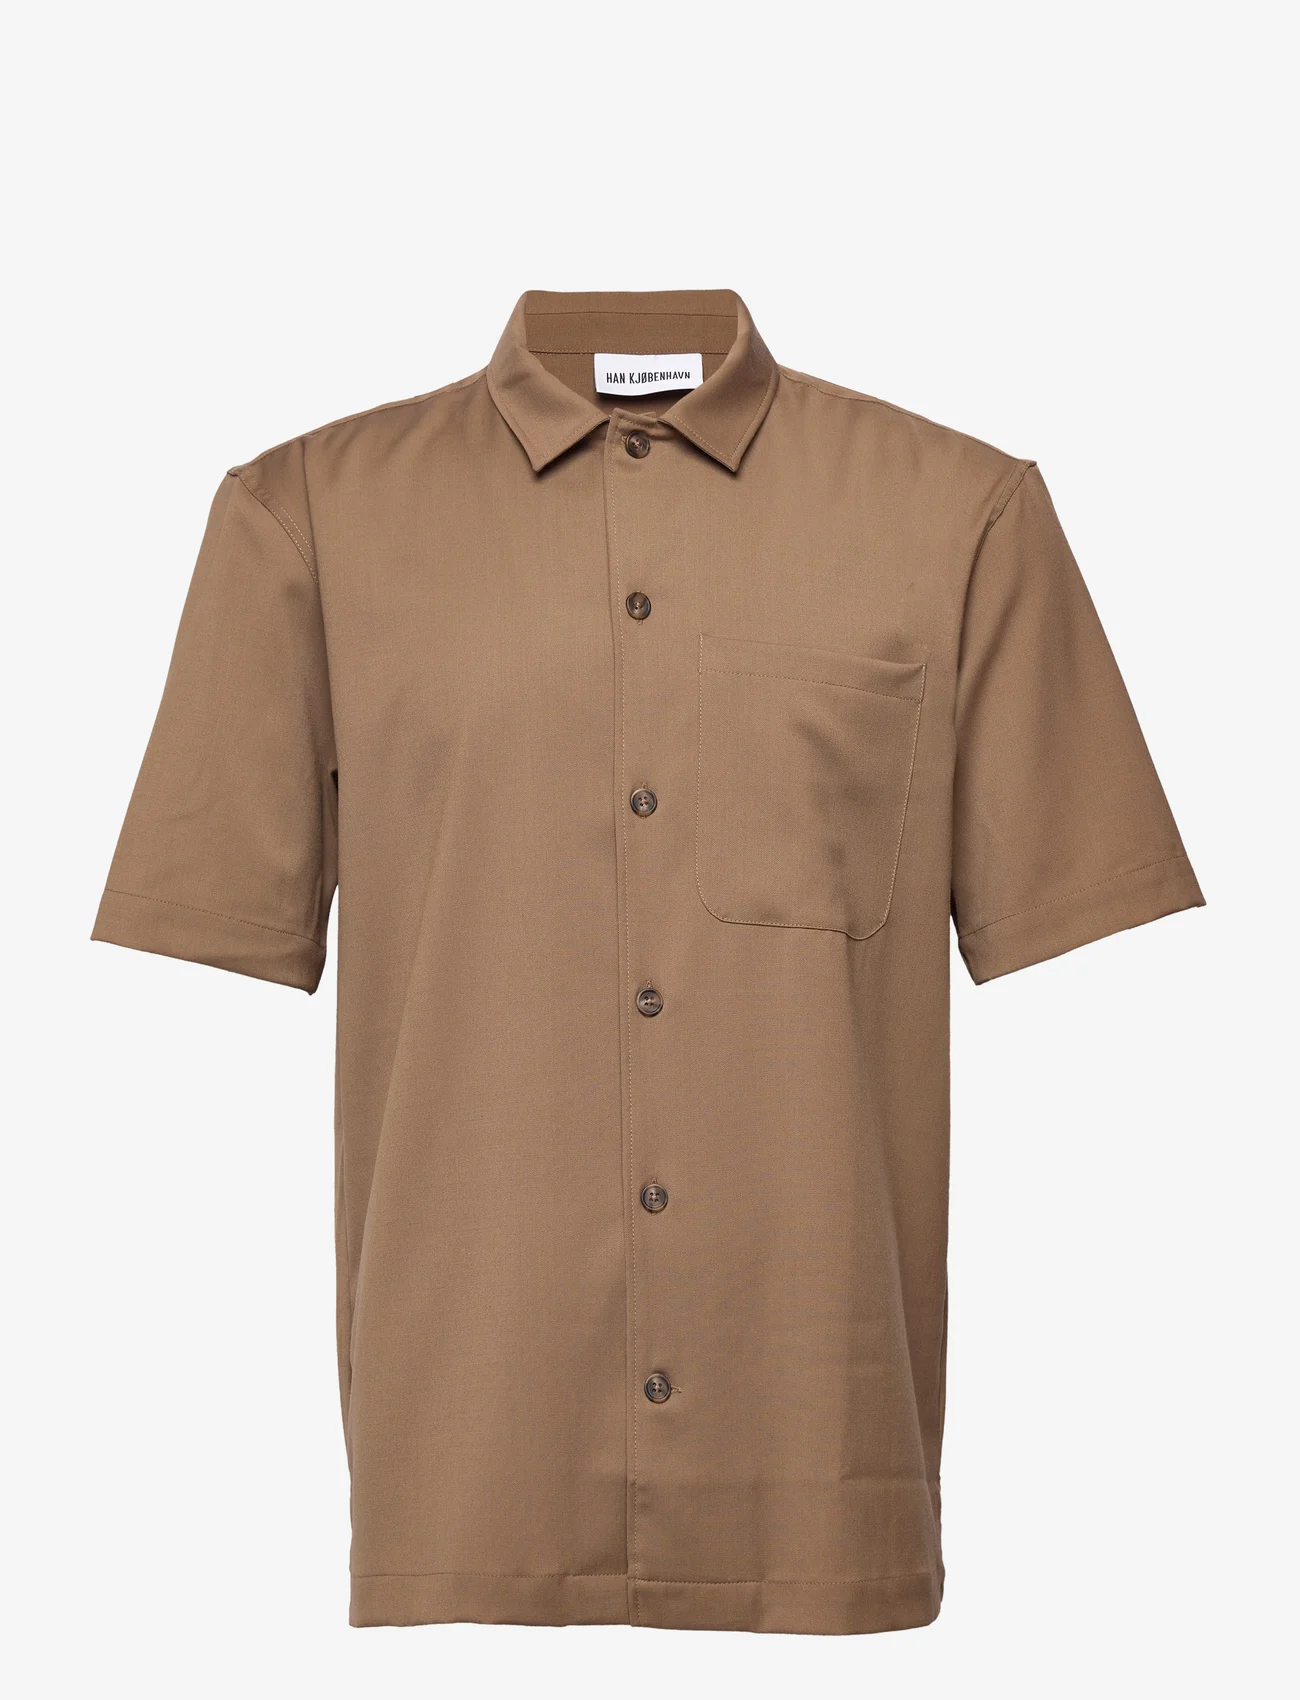 HAN Kjøbenhavn - Summer Shirt - basic-hemden - light brown - 0